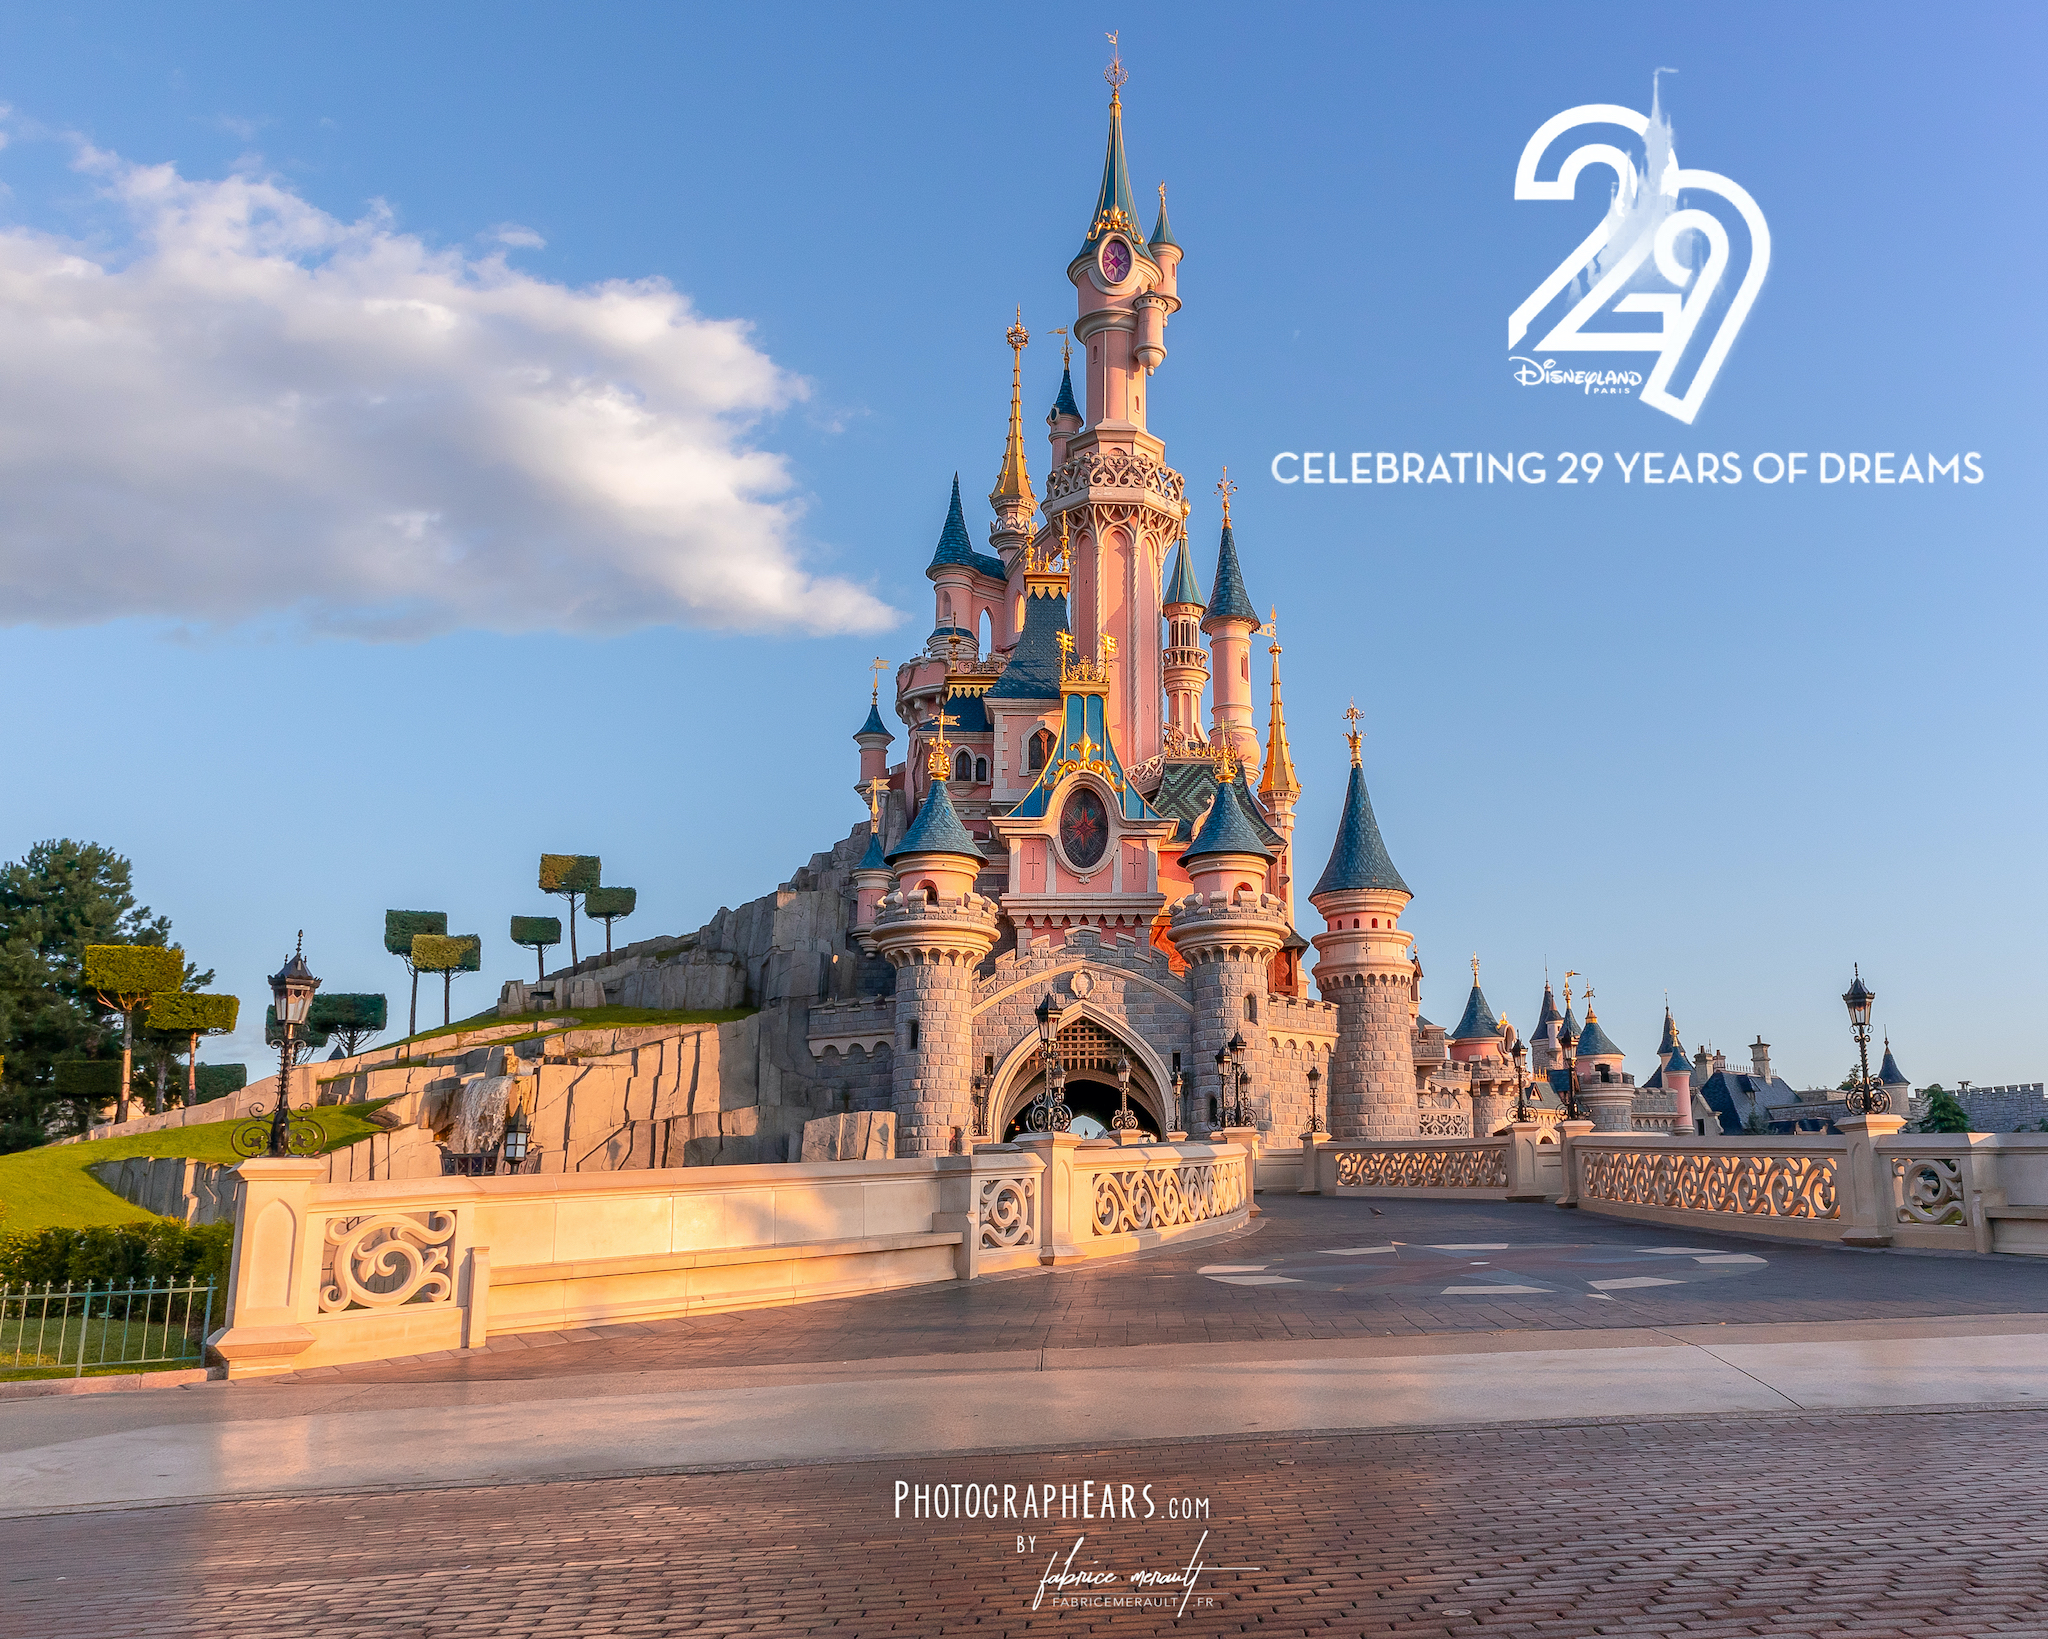 Le Château de la Belle au Bois dormant — 12 avril 2021 — 29ème Anniversaire de Disneyland Paris !